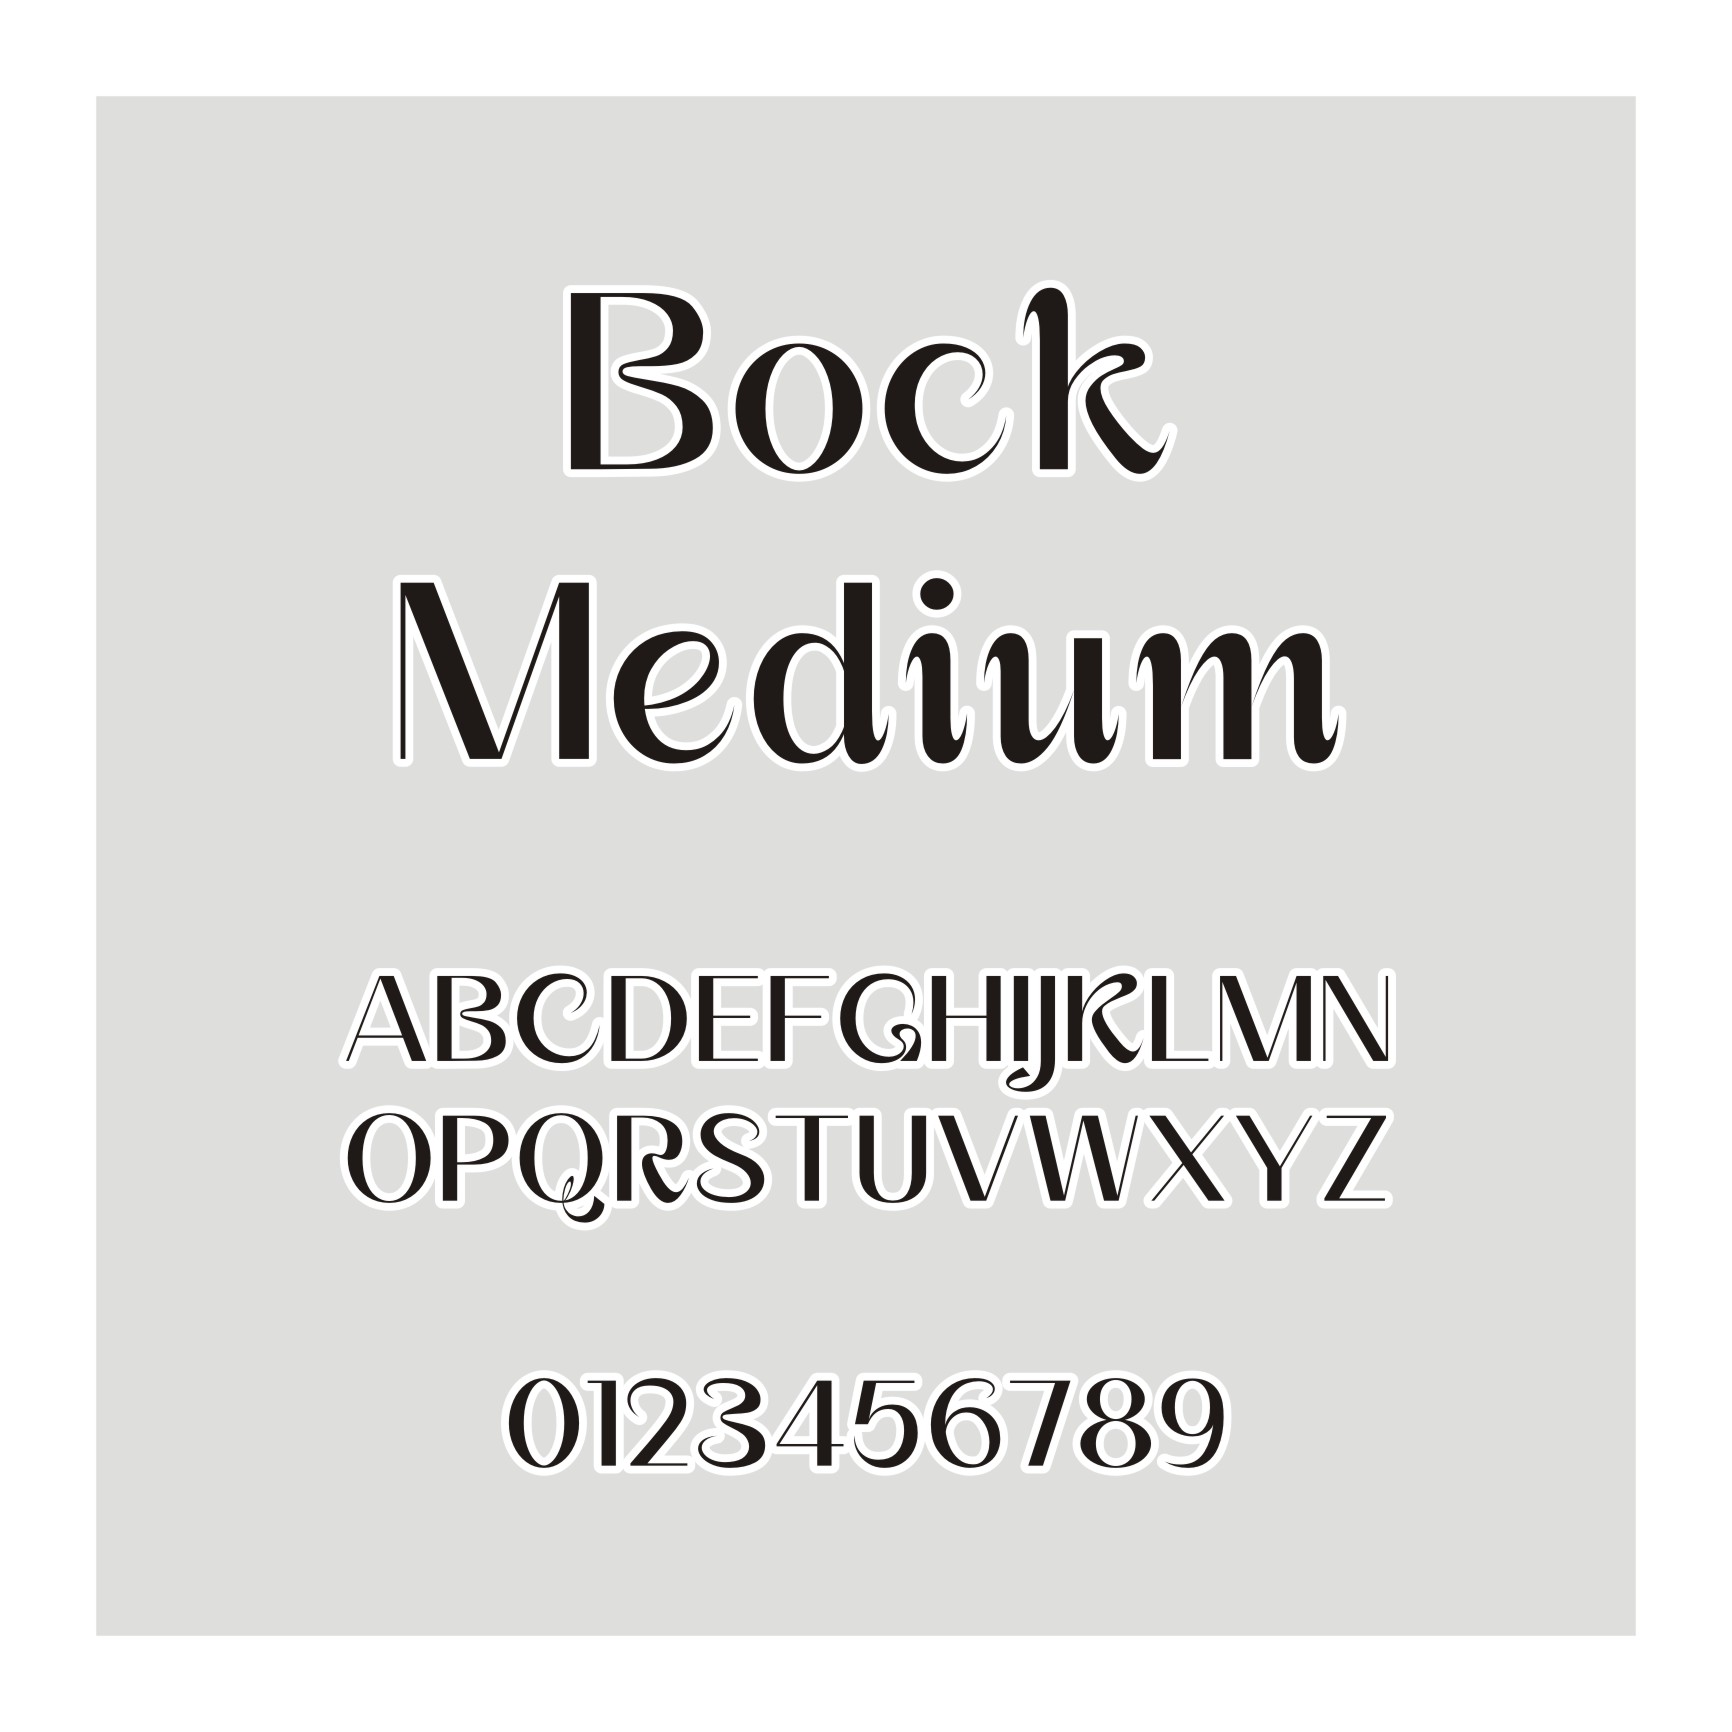 Bock Medium